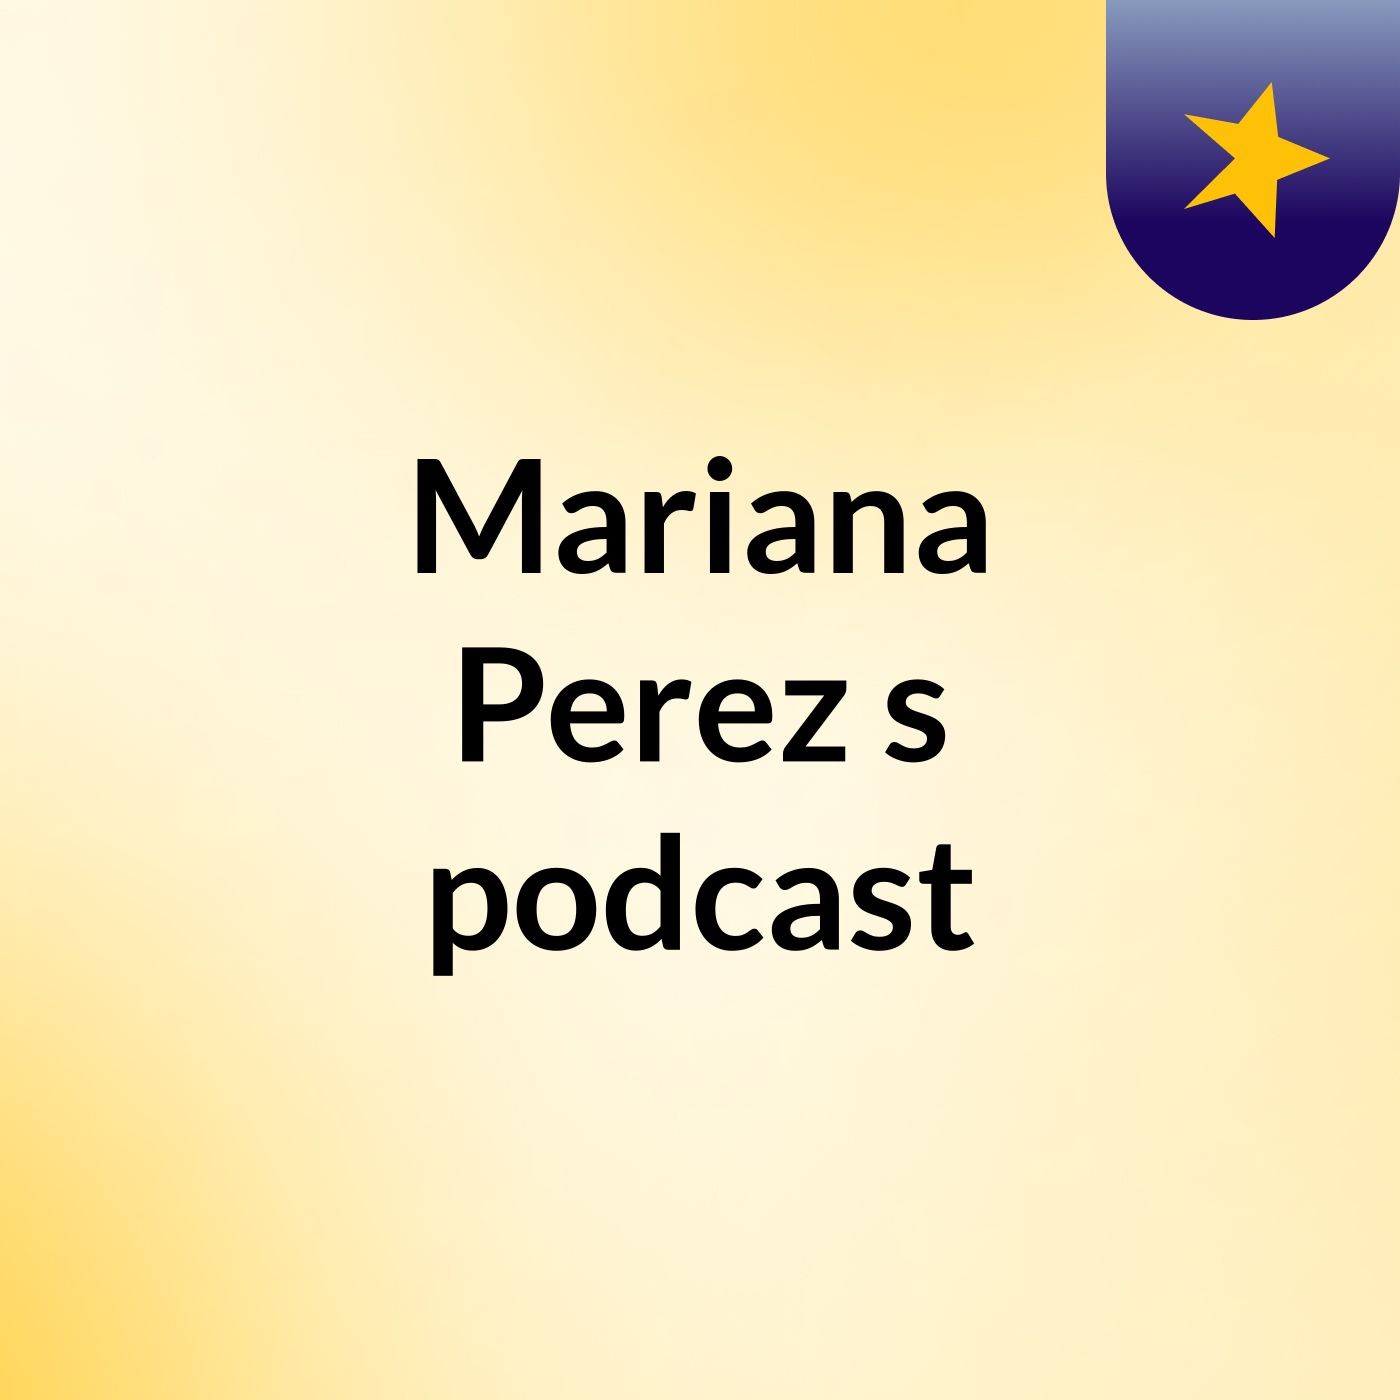 Mariana Perez's podcast